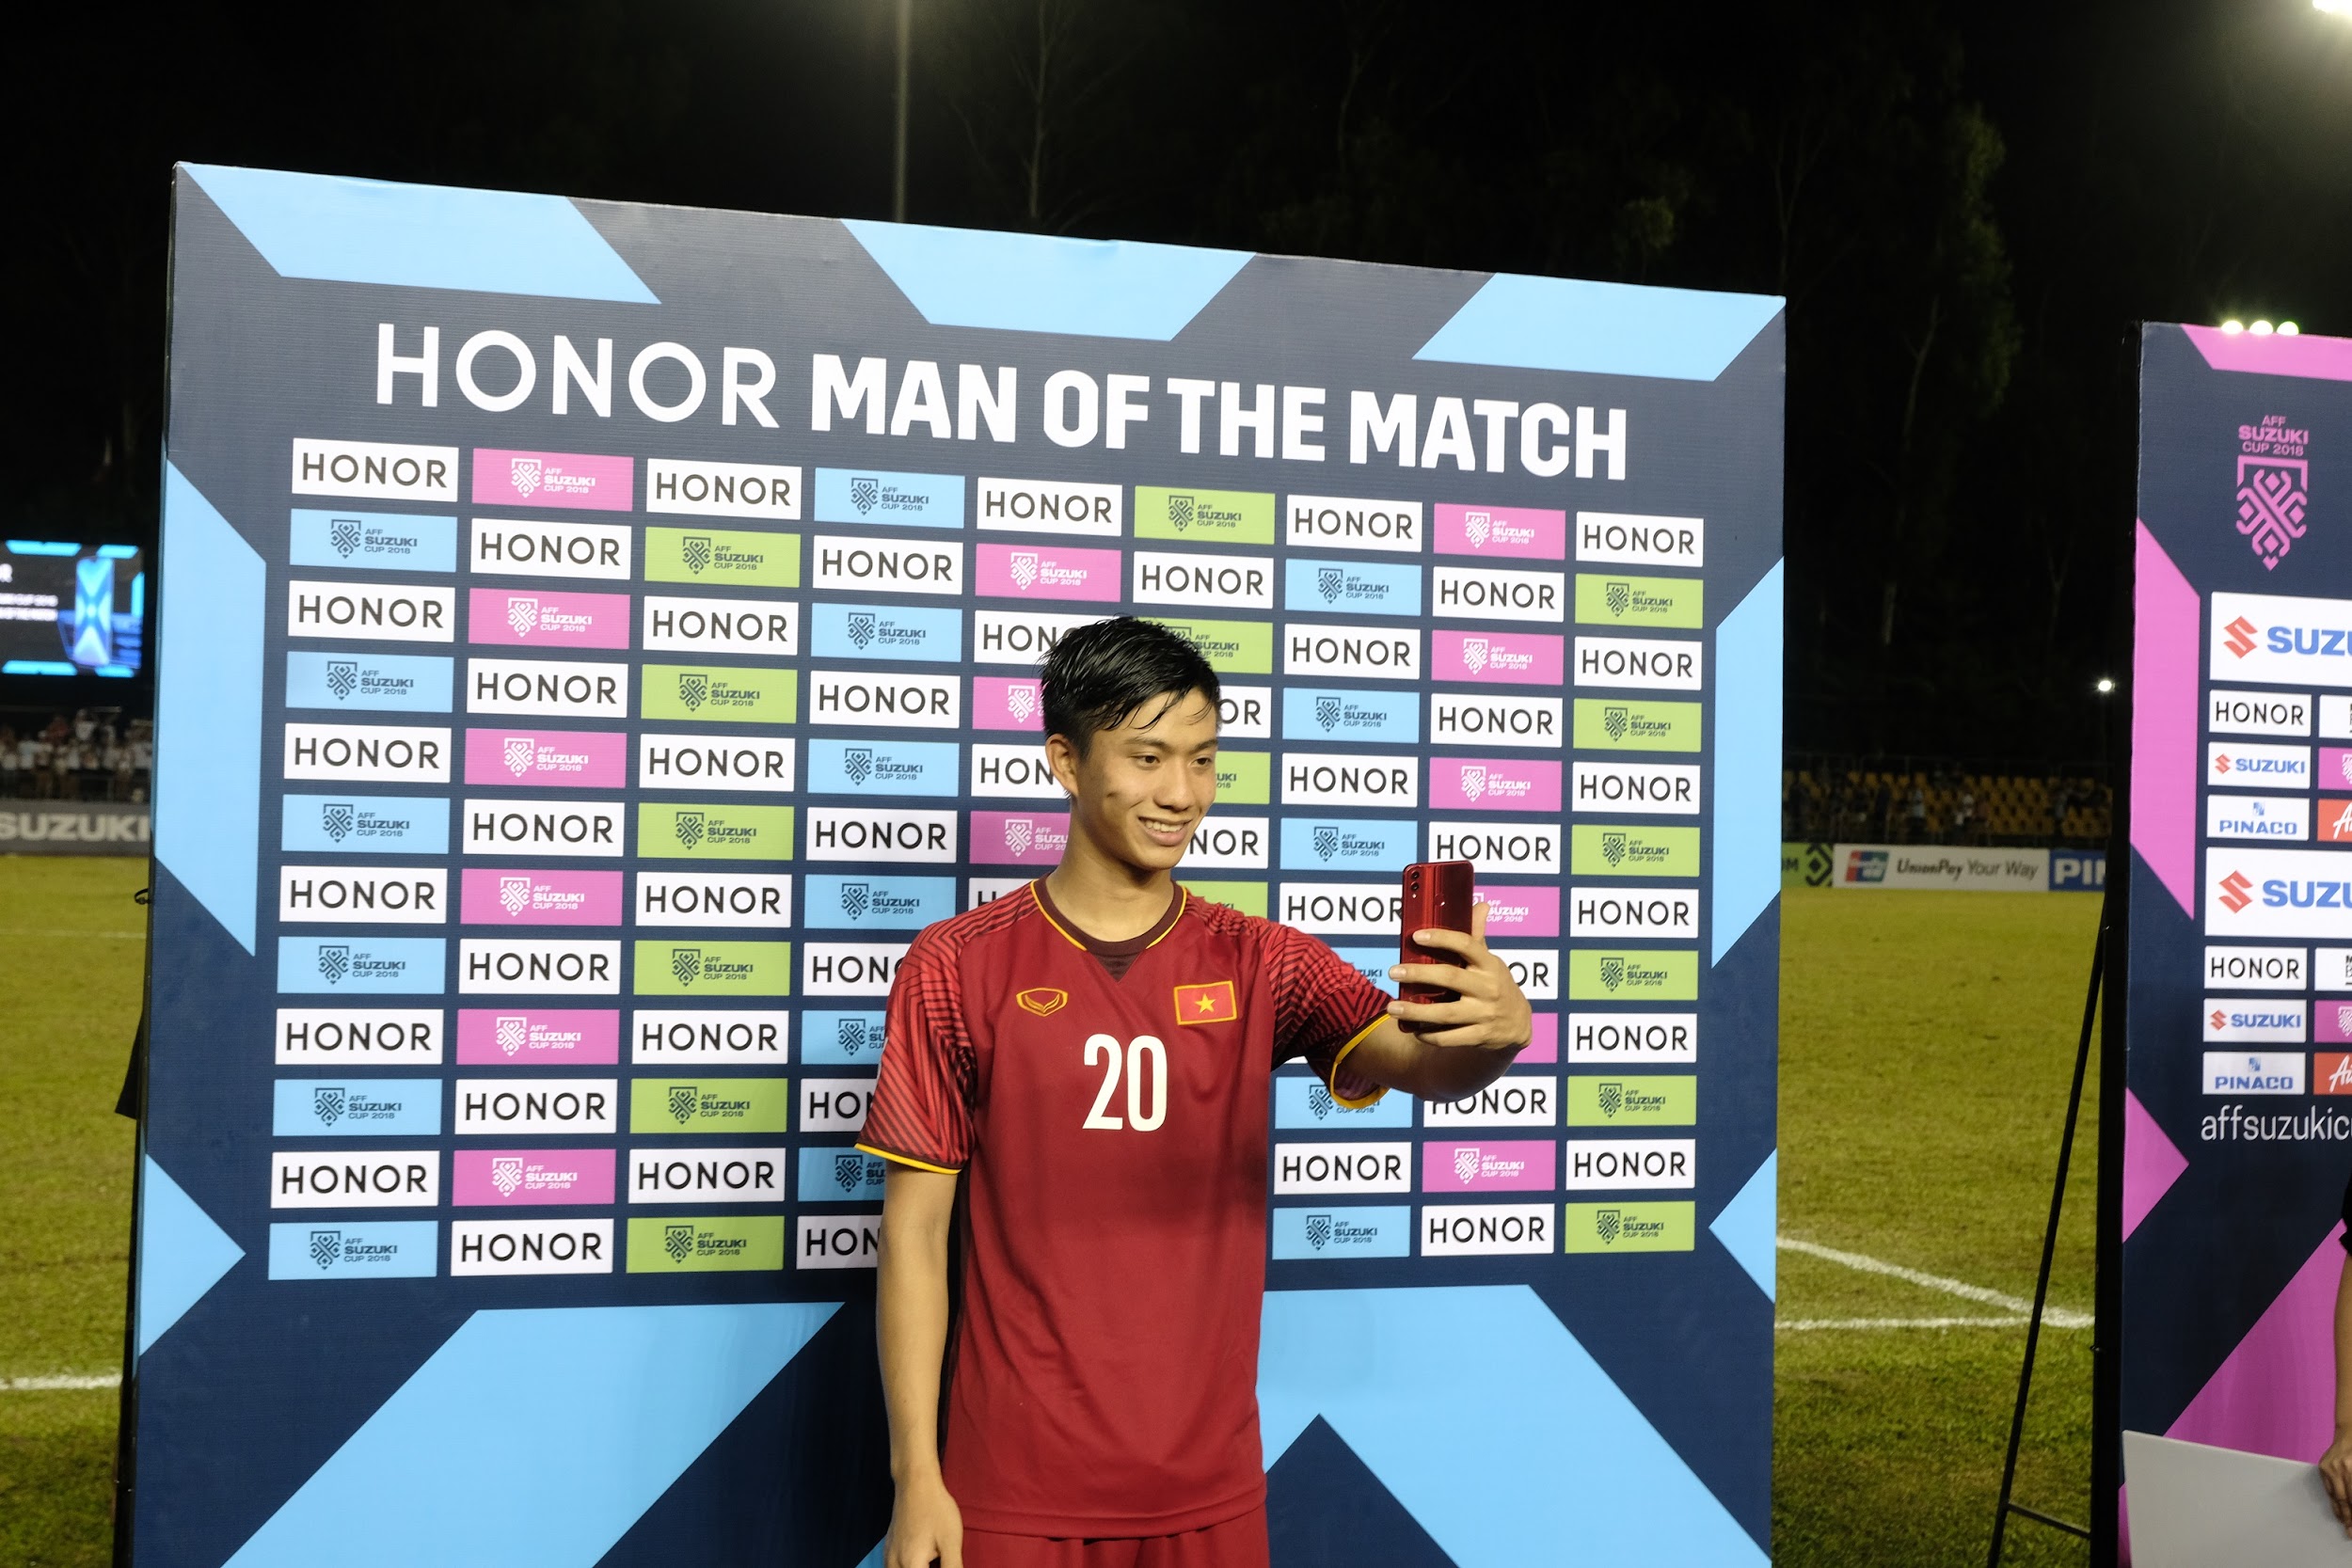 Hé lộ món quà công nghệ được tặng cho “Người hùng của trận đấu” tại AFF Cup 2018 - Ảnh 6.